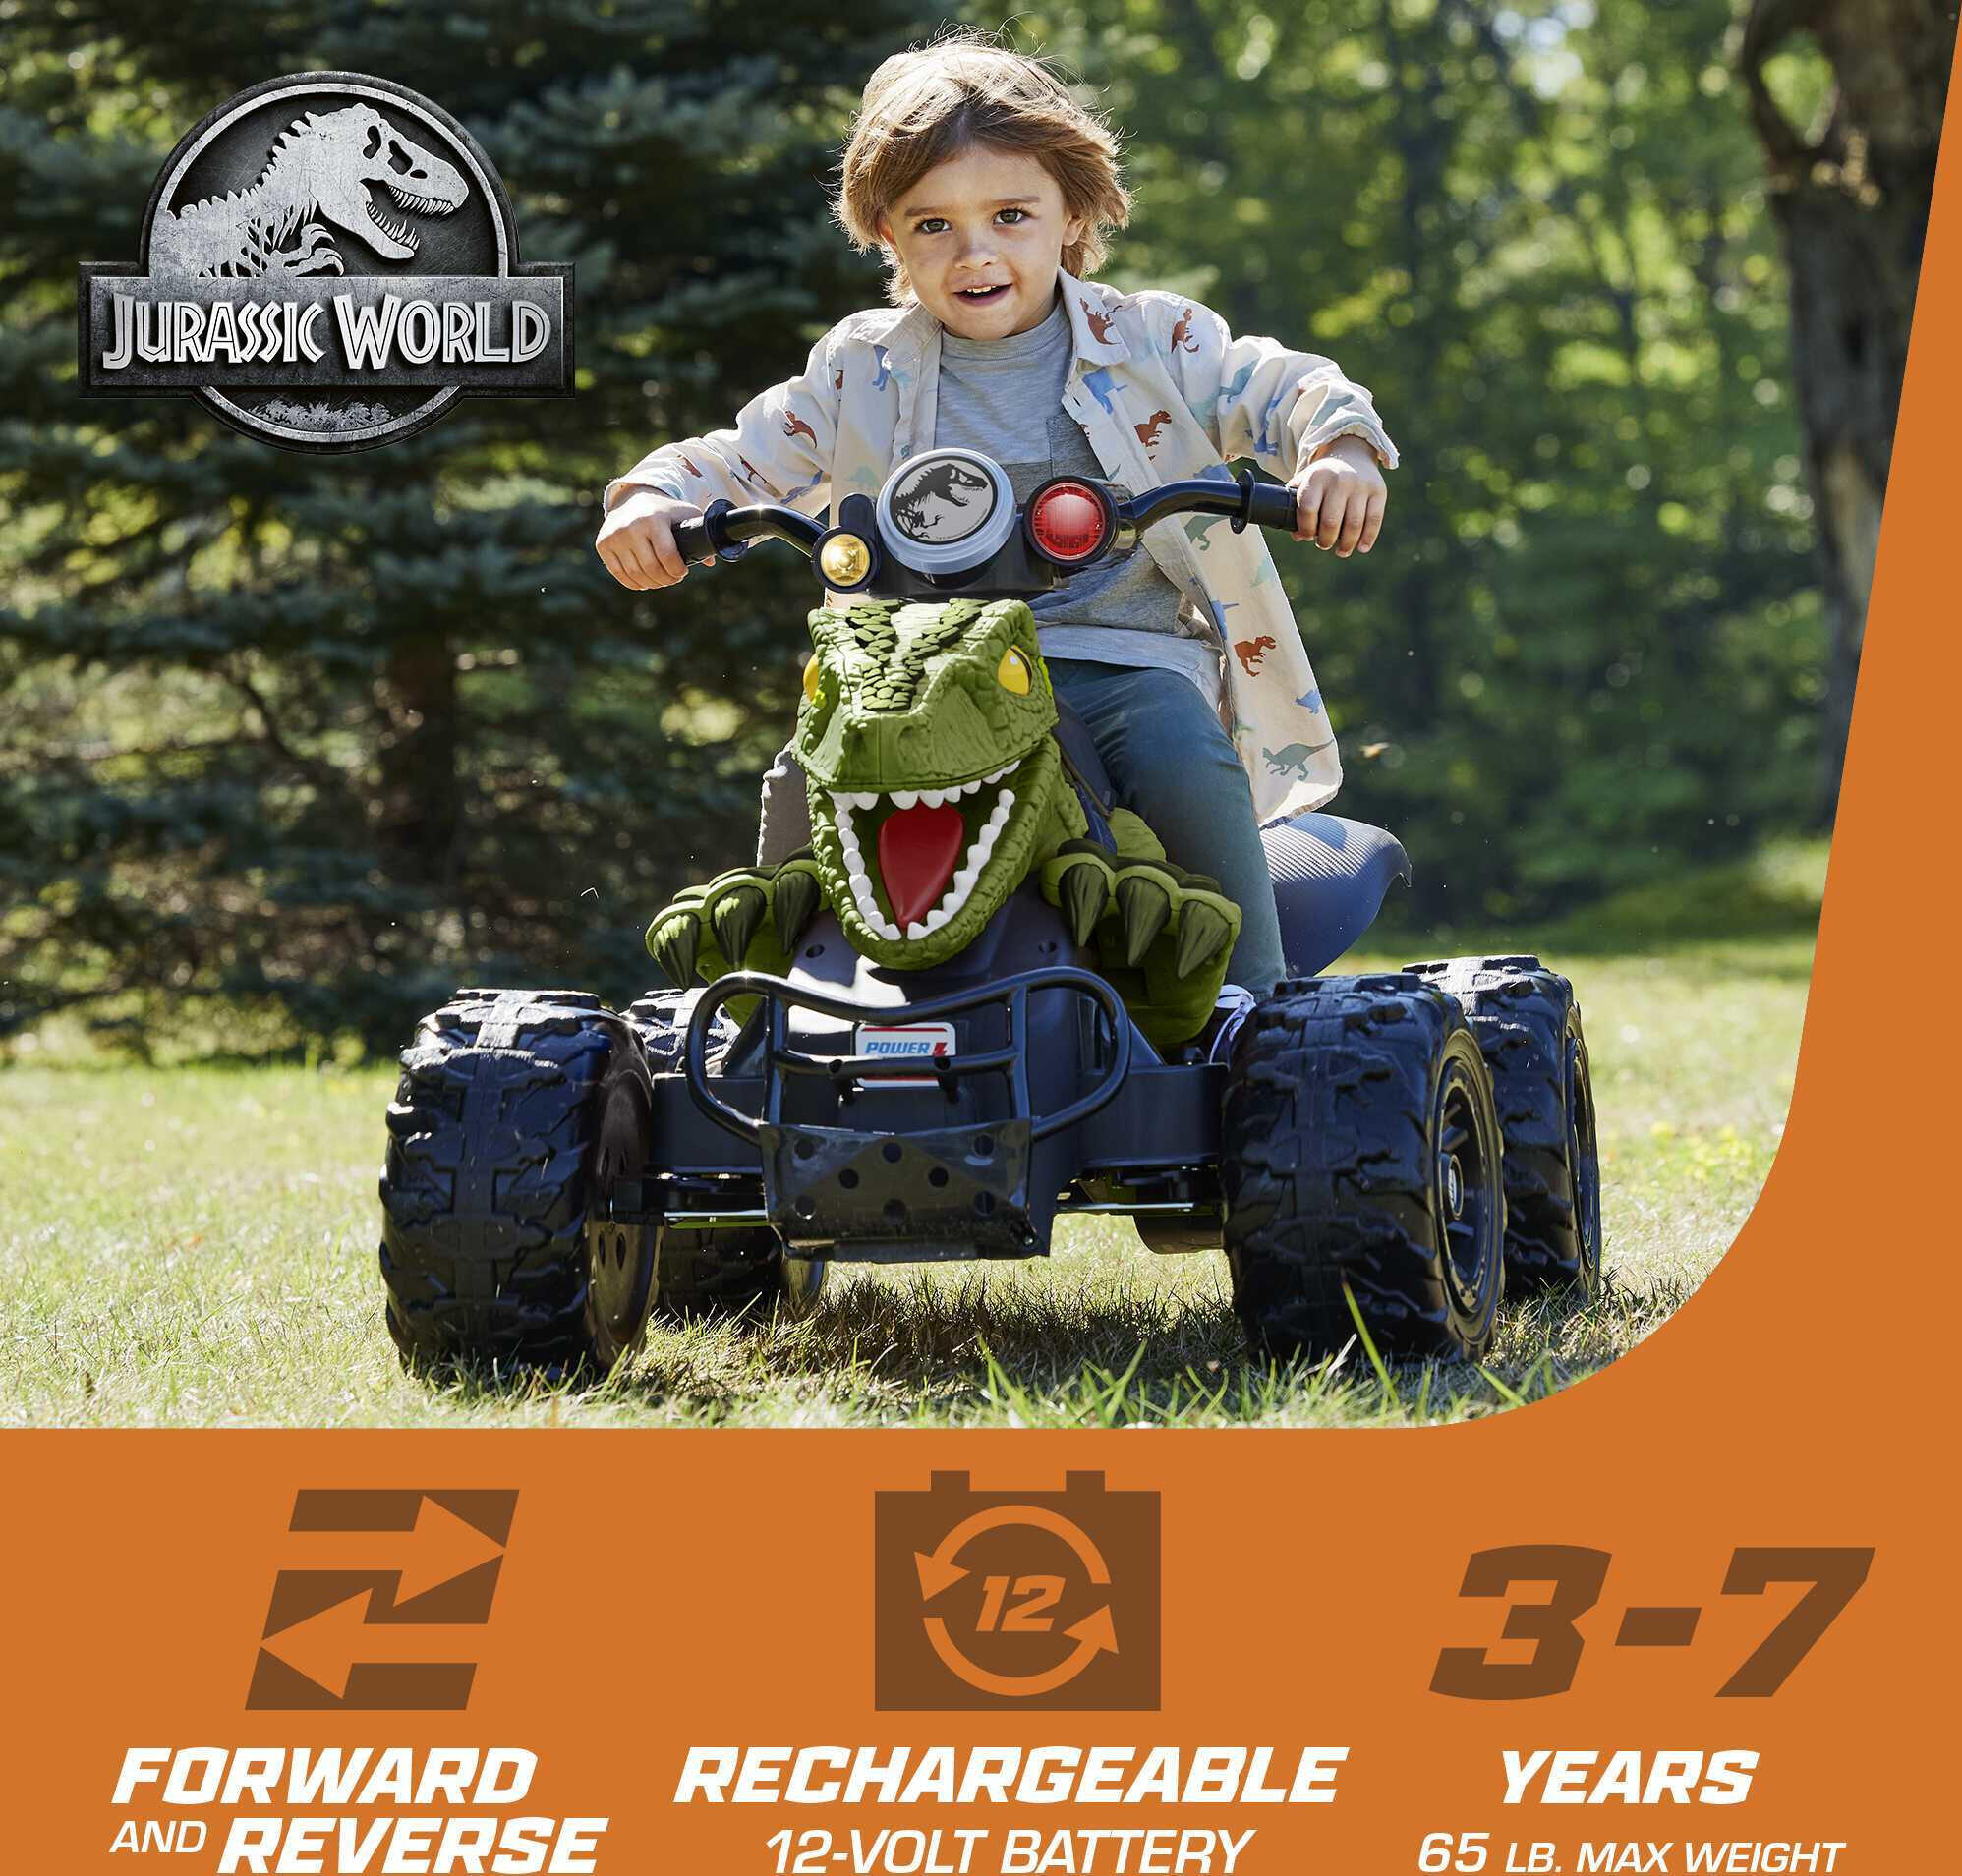 12V Power Wheels Jurassic World Dino Racer Battery-Powered Ride-On ATV Dinosaur Toy, Green - image 3 of 8